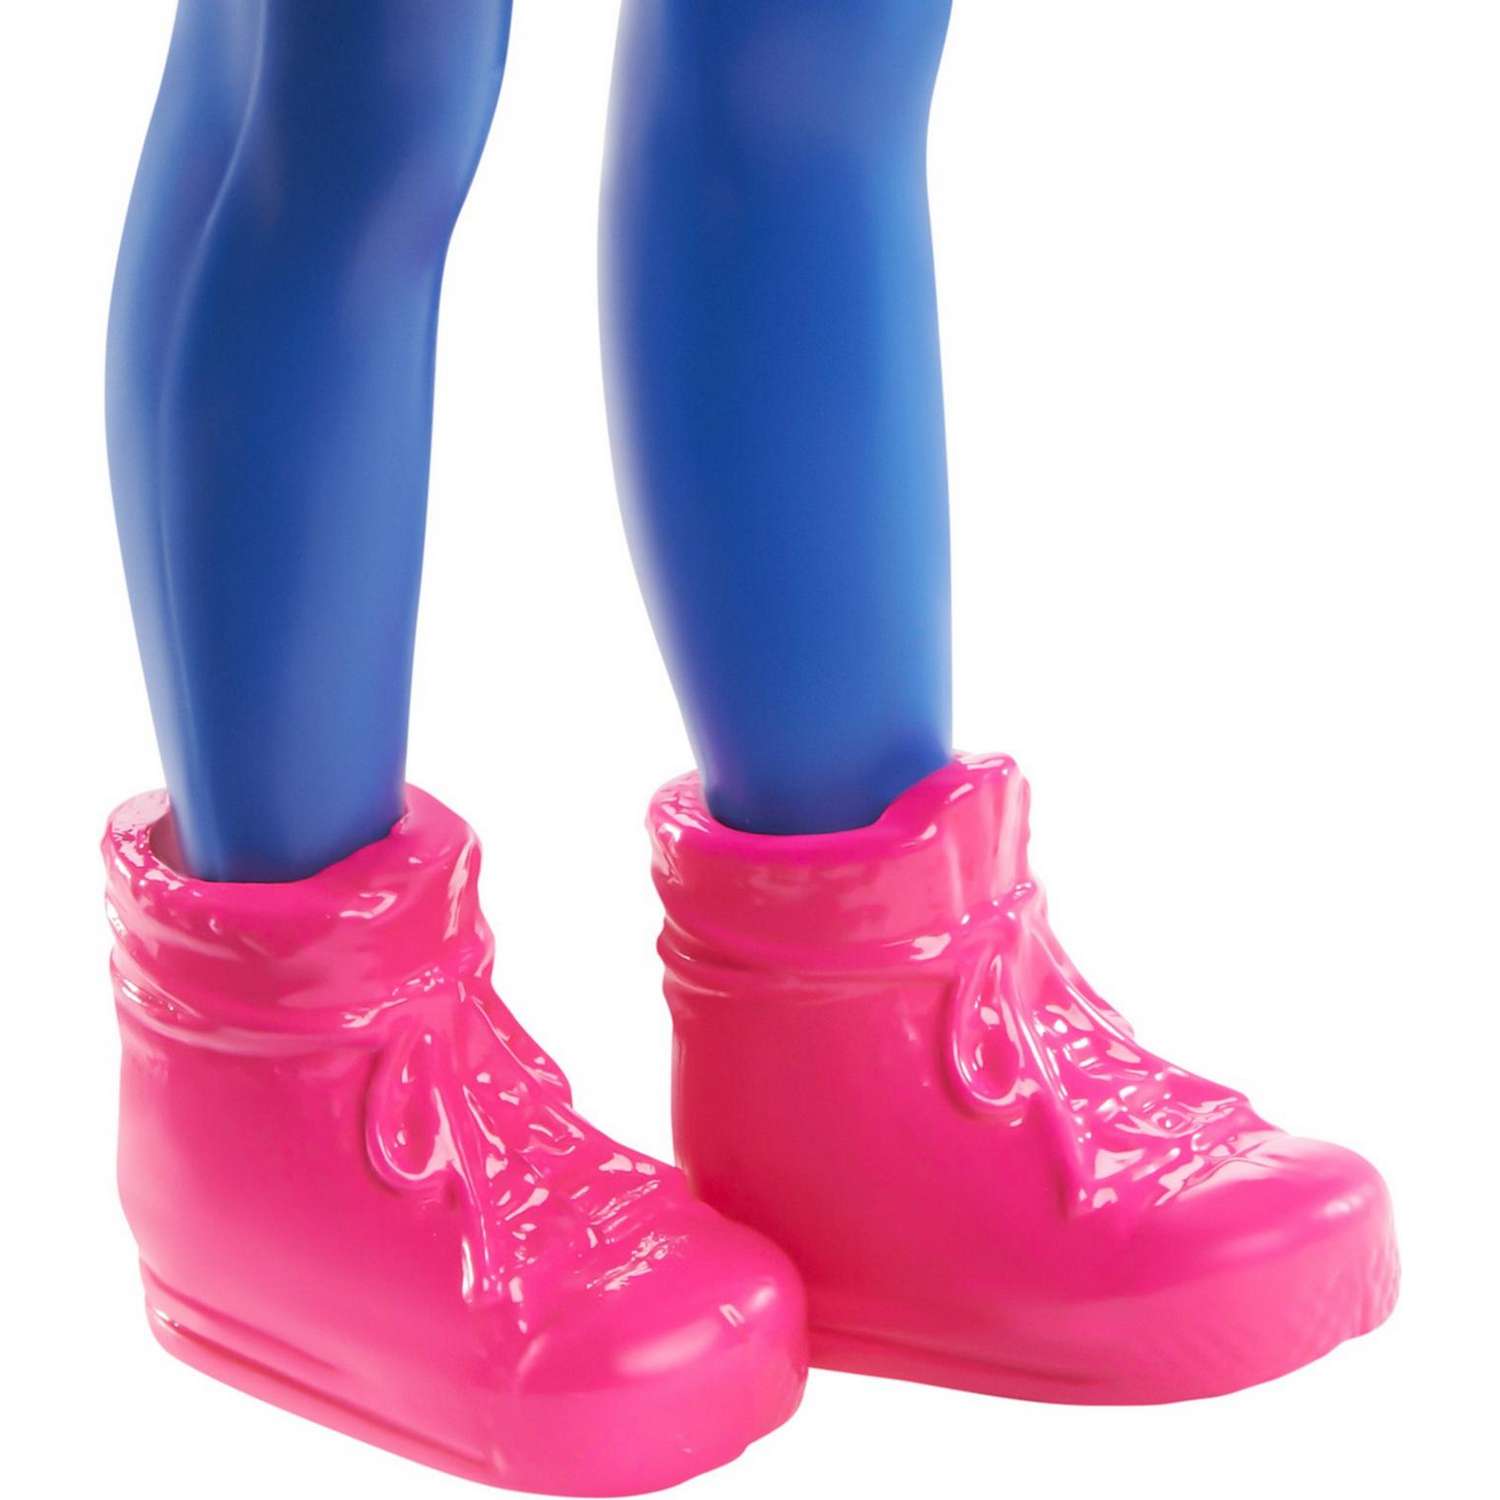 Набор Barbie Карьера Челси кукла+аксессуары в ассортименте GTN86 GTN86 - фото 40